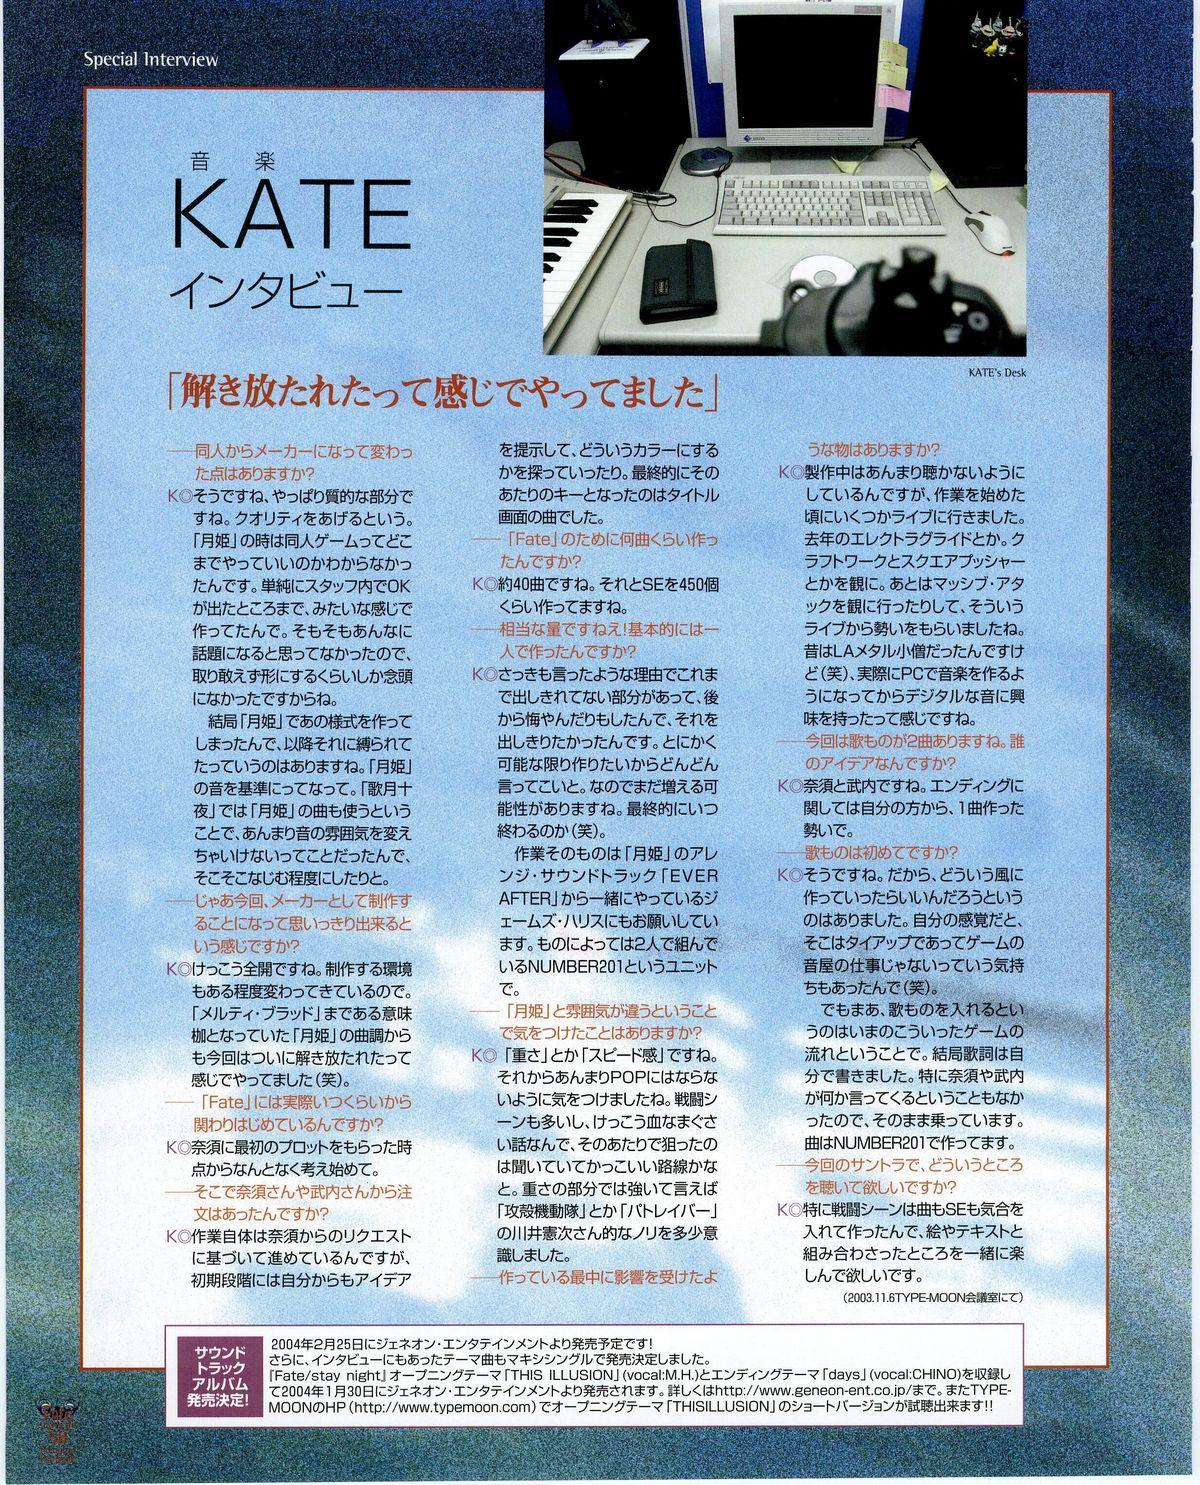 Fate/stay night Premium FanBook 49